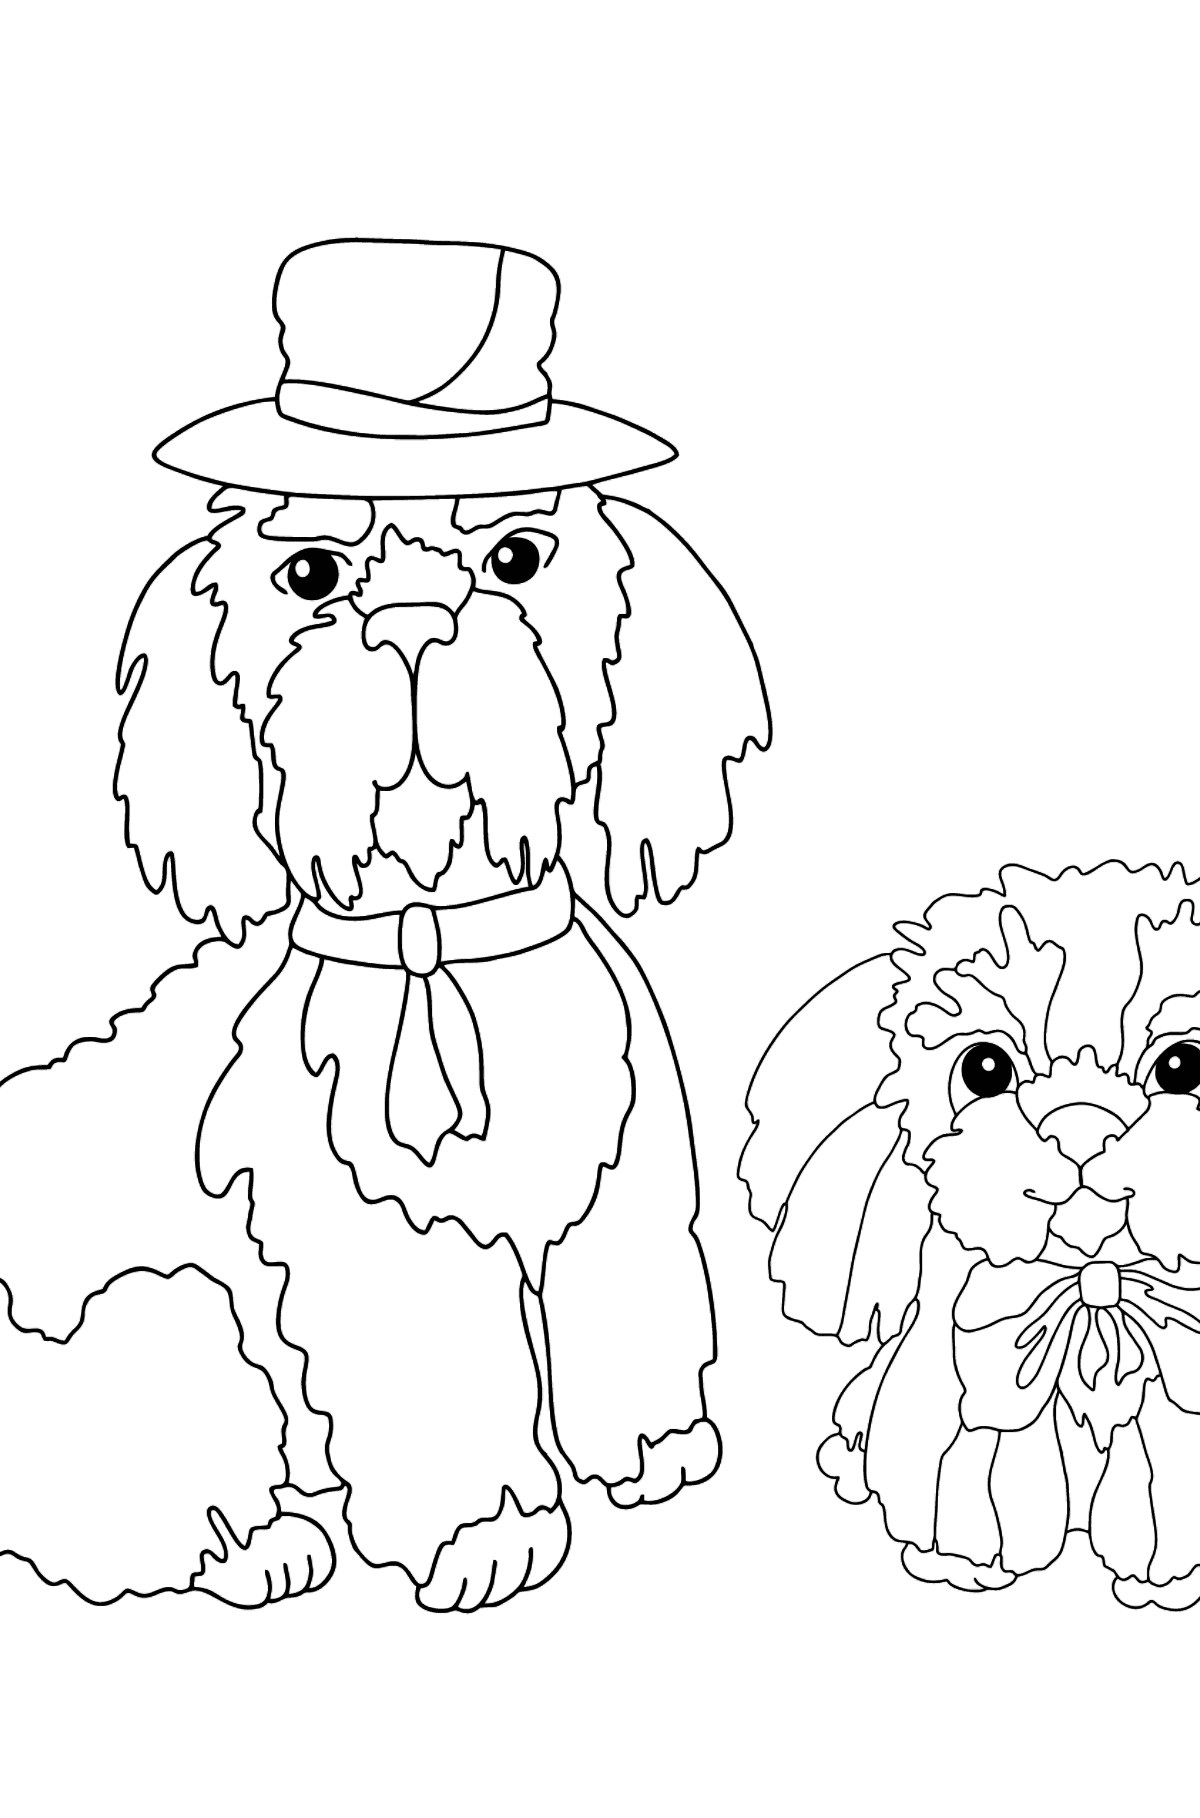 Värityskuva söpöt koirat (vaikea) - Värityskuvat lapsille